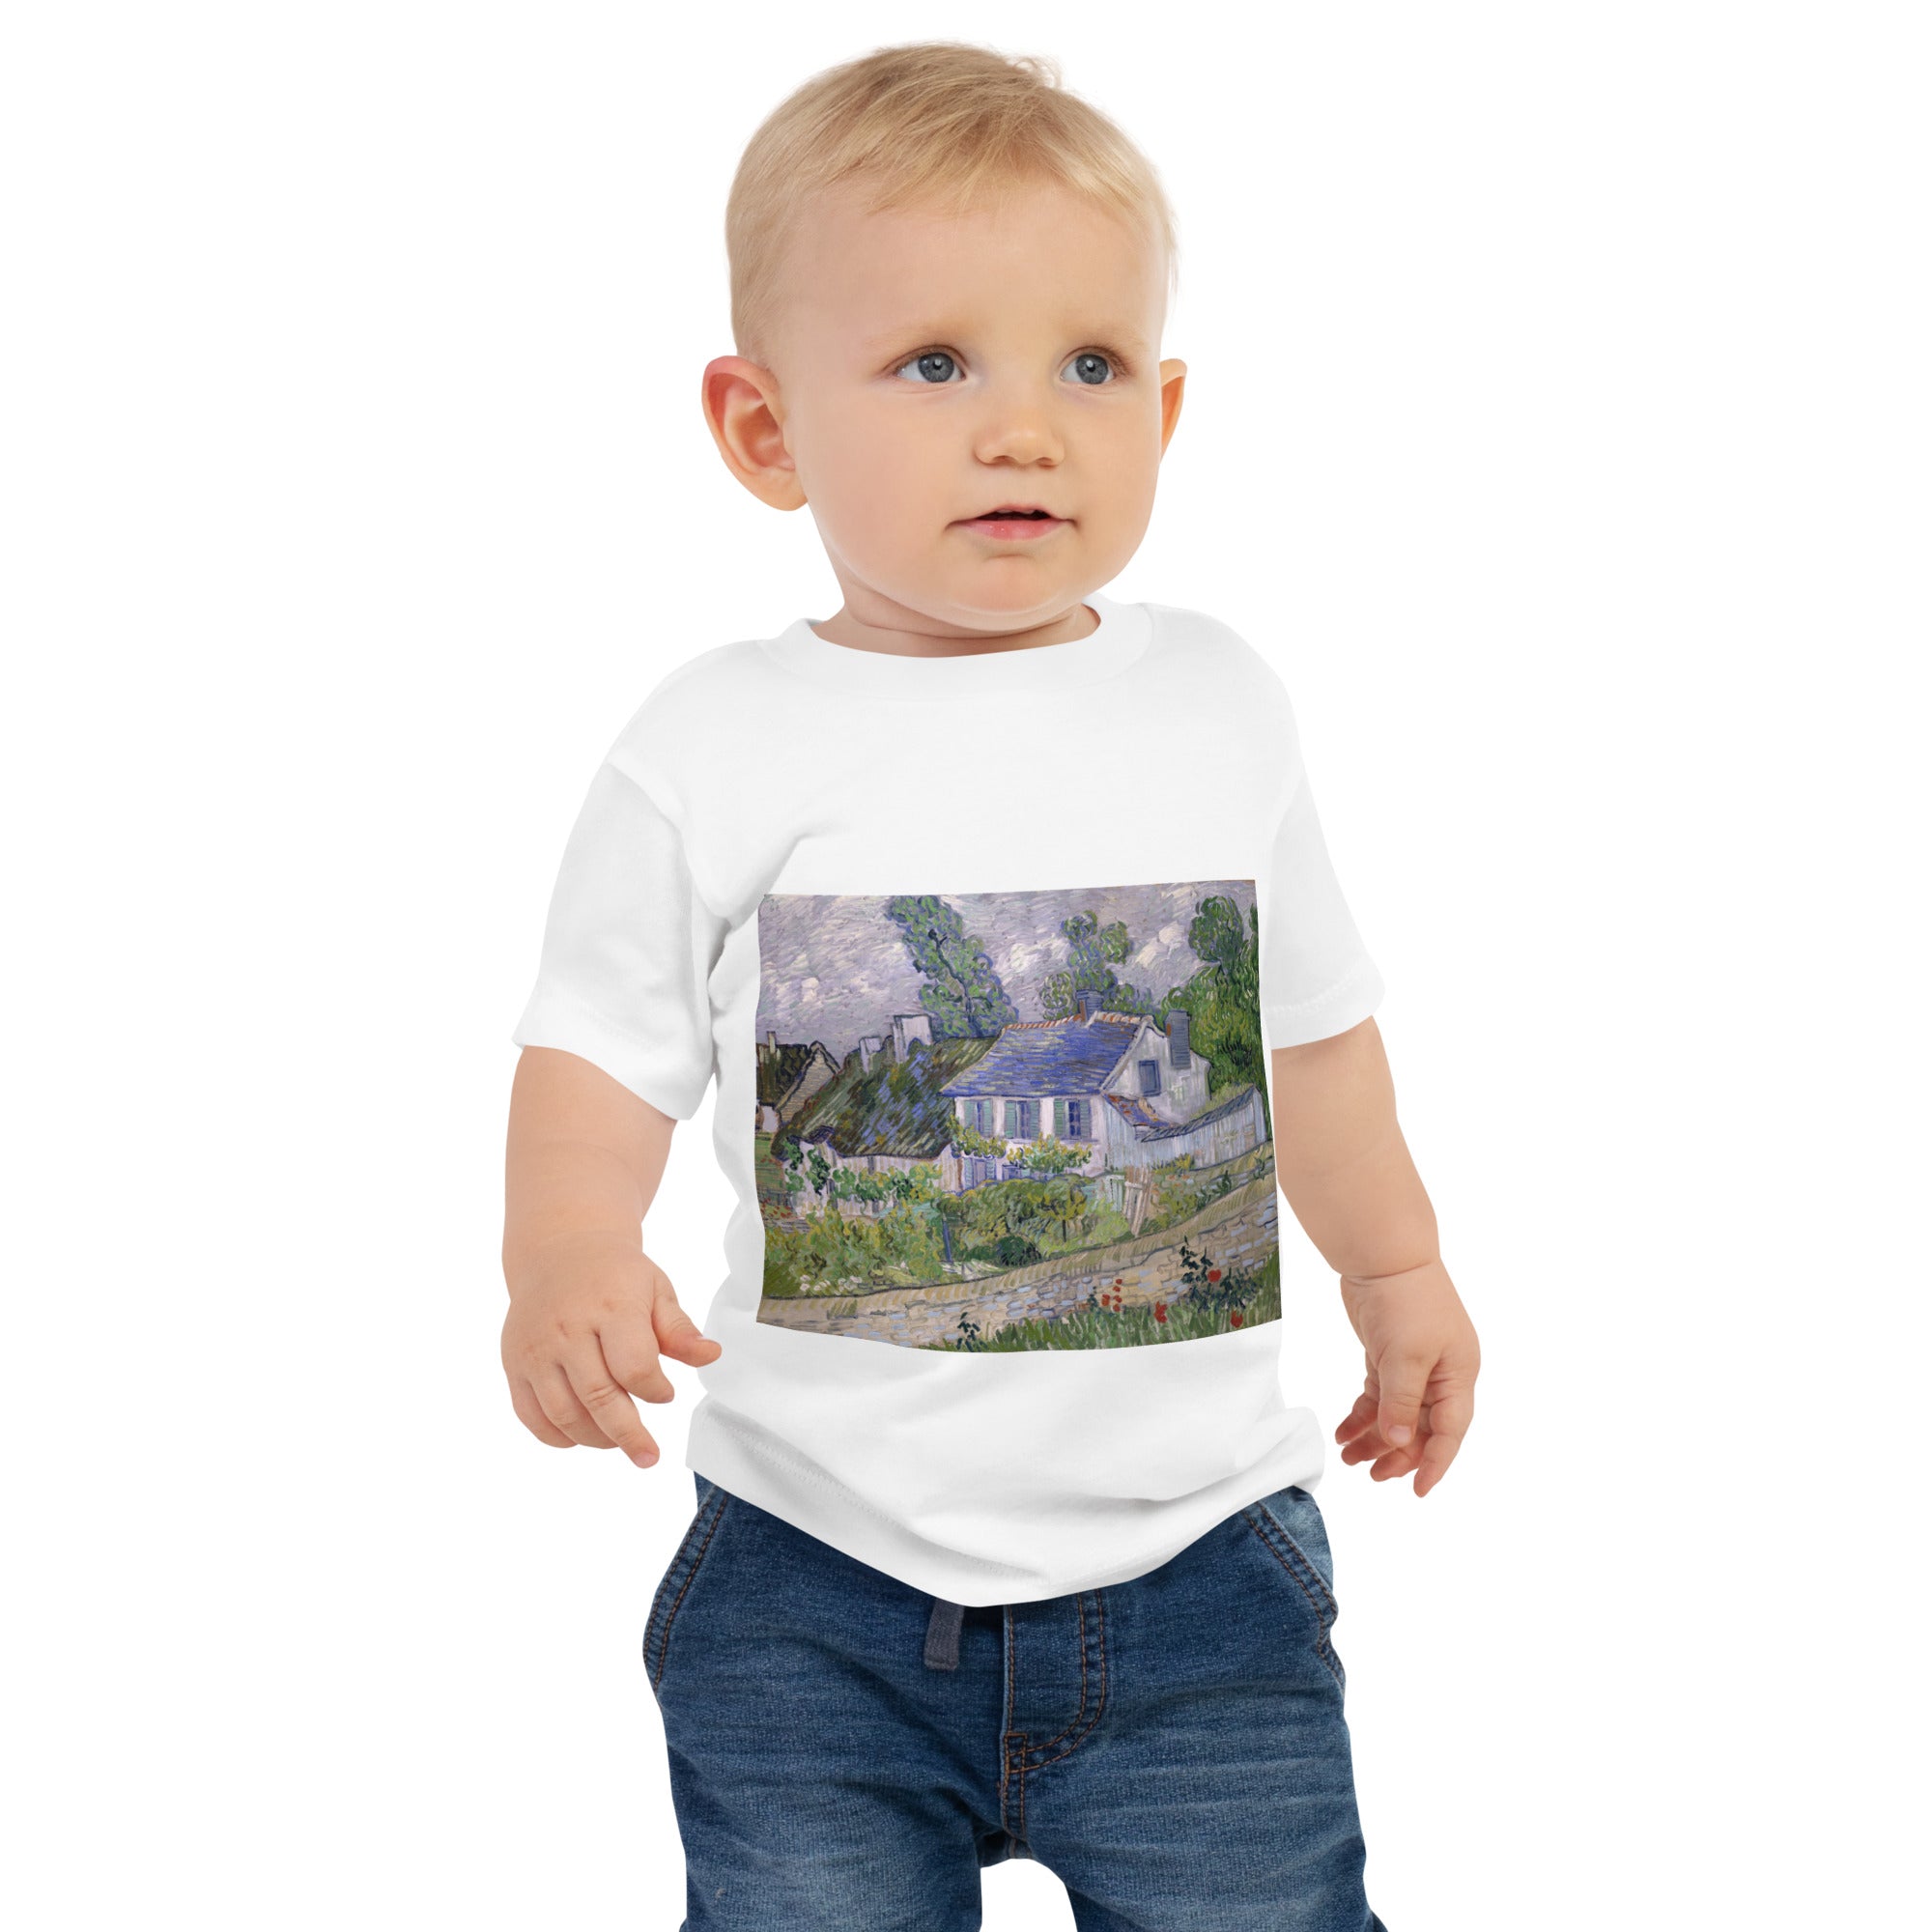 Vincent van Gogh „Häuser bei Auvers“, berühmtes Gemälde, Baby-T-Shirt, Premium-Kunst-T-Shirt für Babys